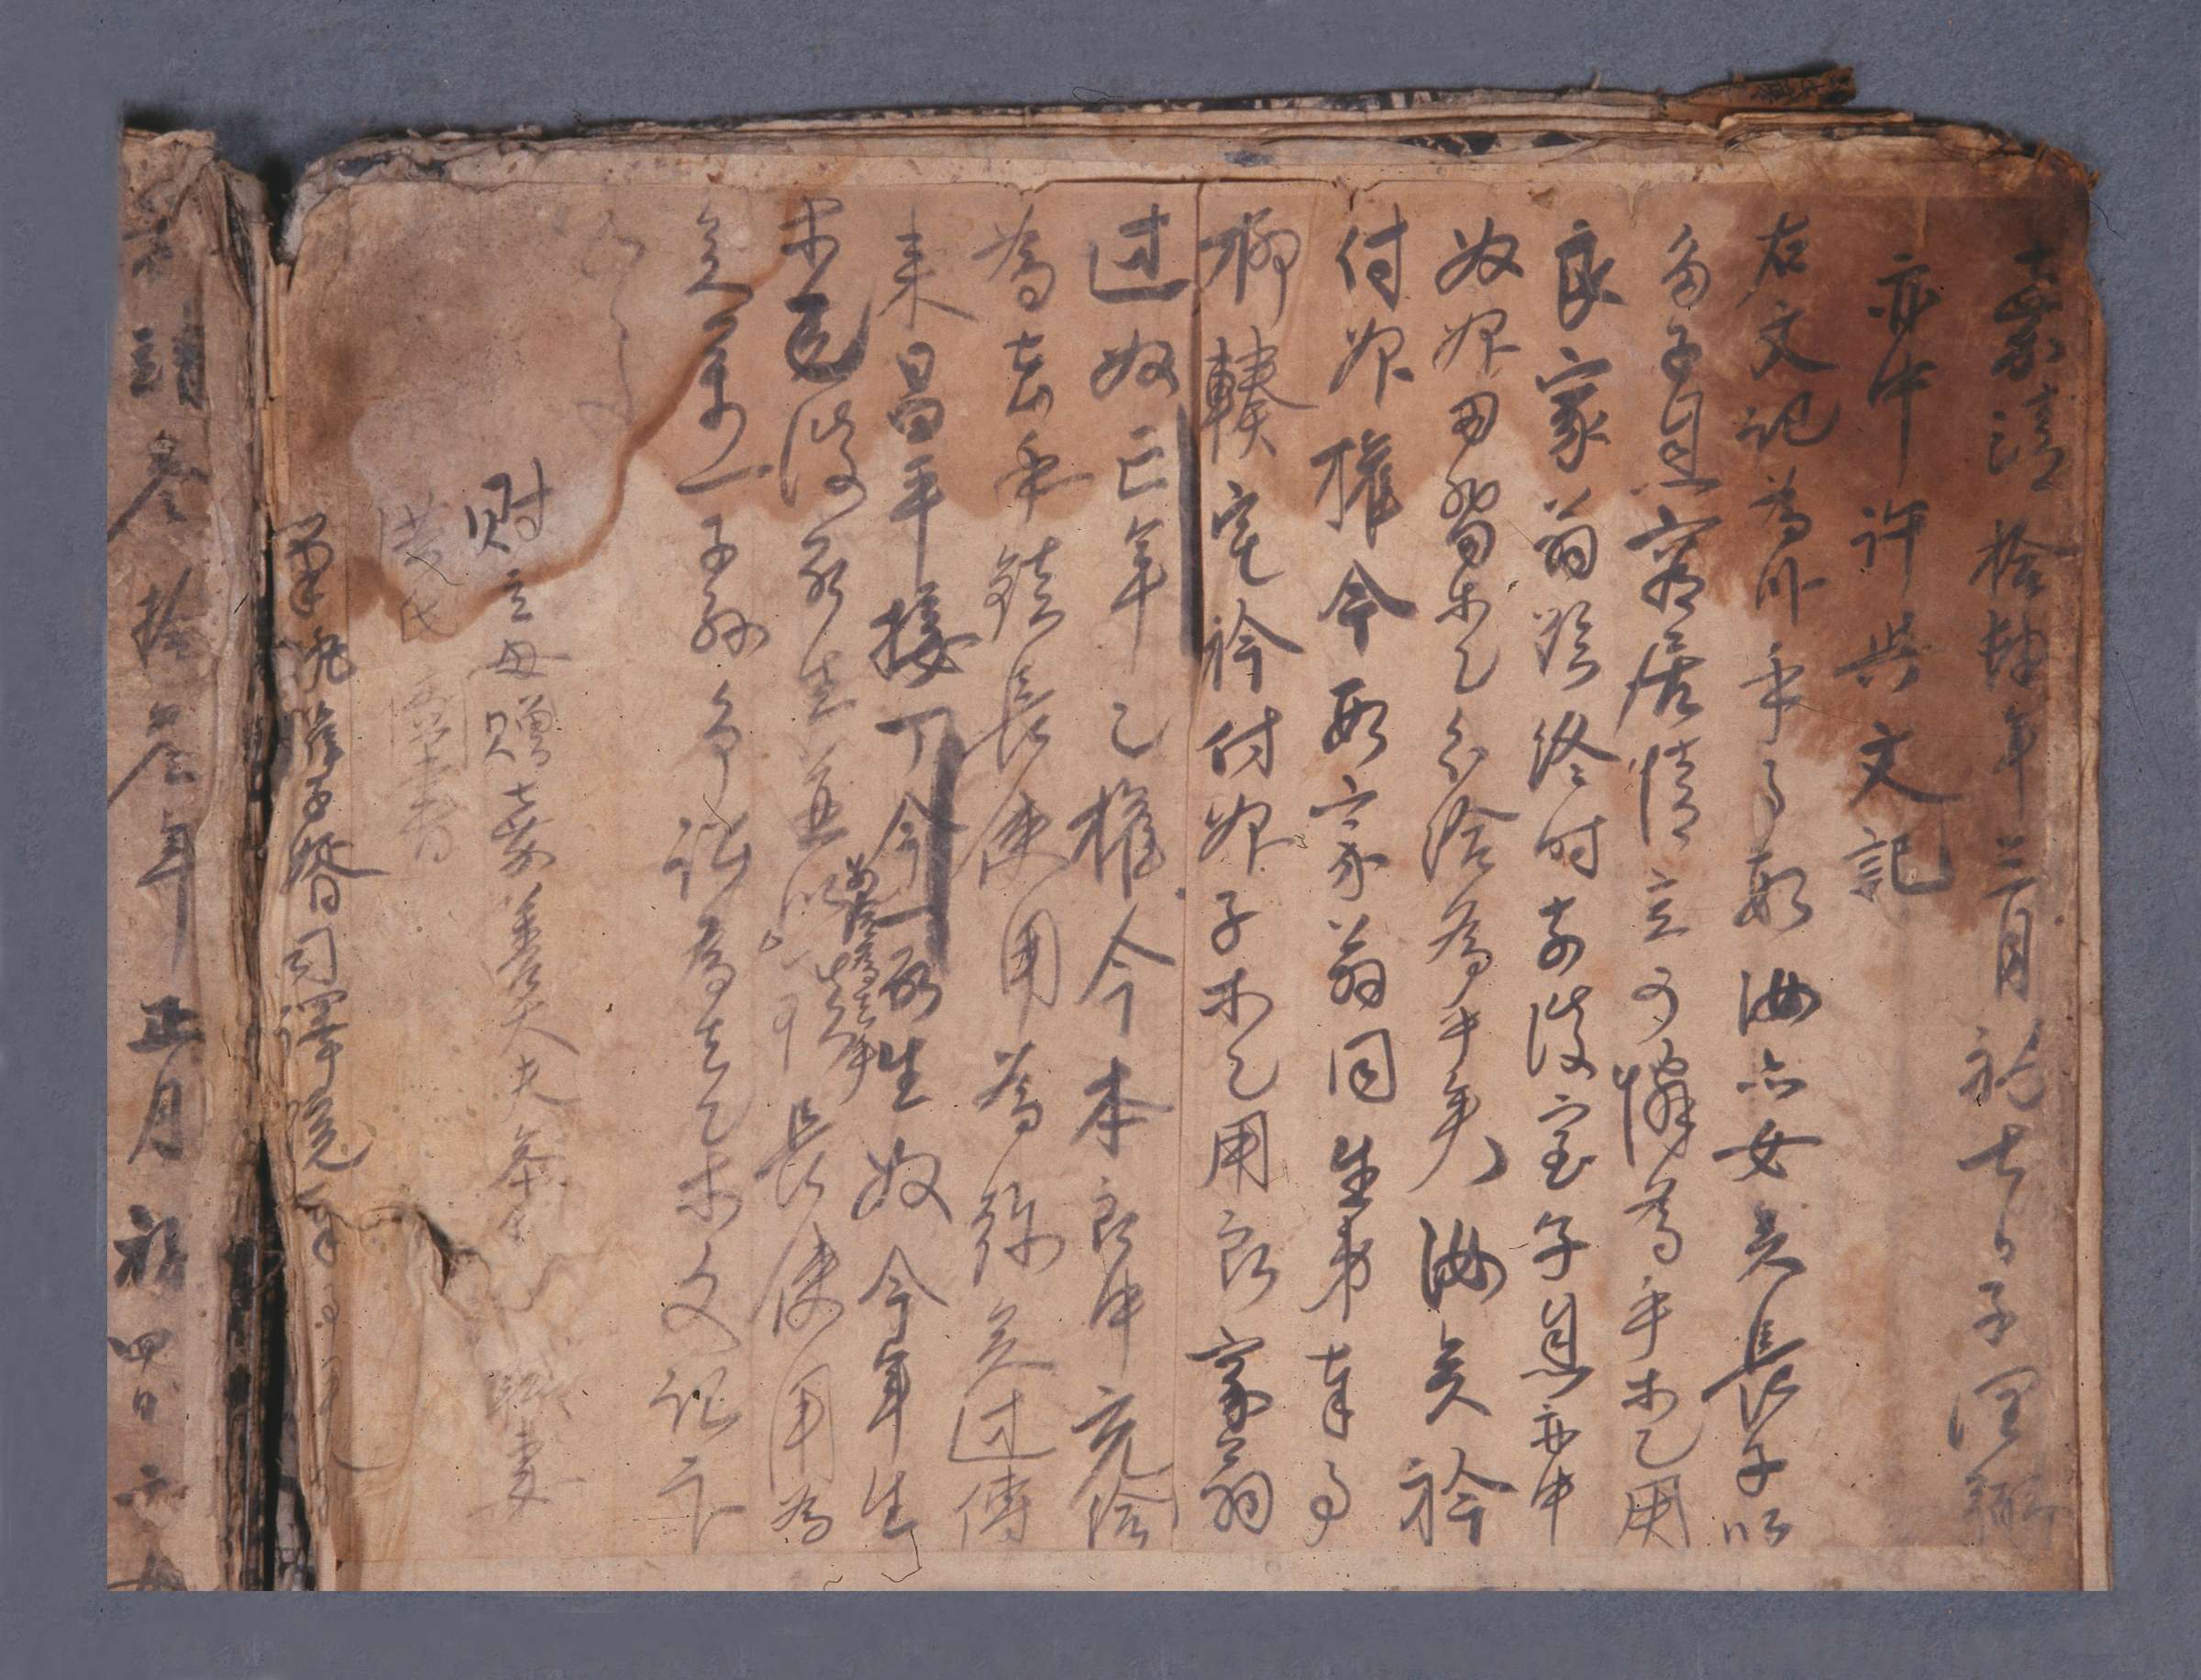 1535년에 유식의 처 홍씨가 장남 유윤필에게 별급을 행하고 작성해 준 분재기